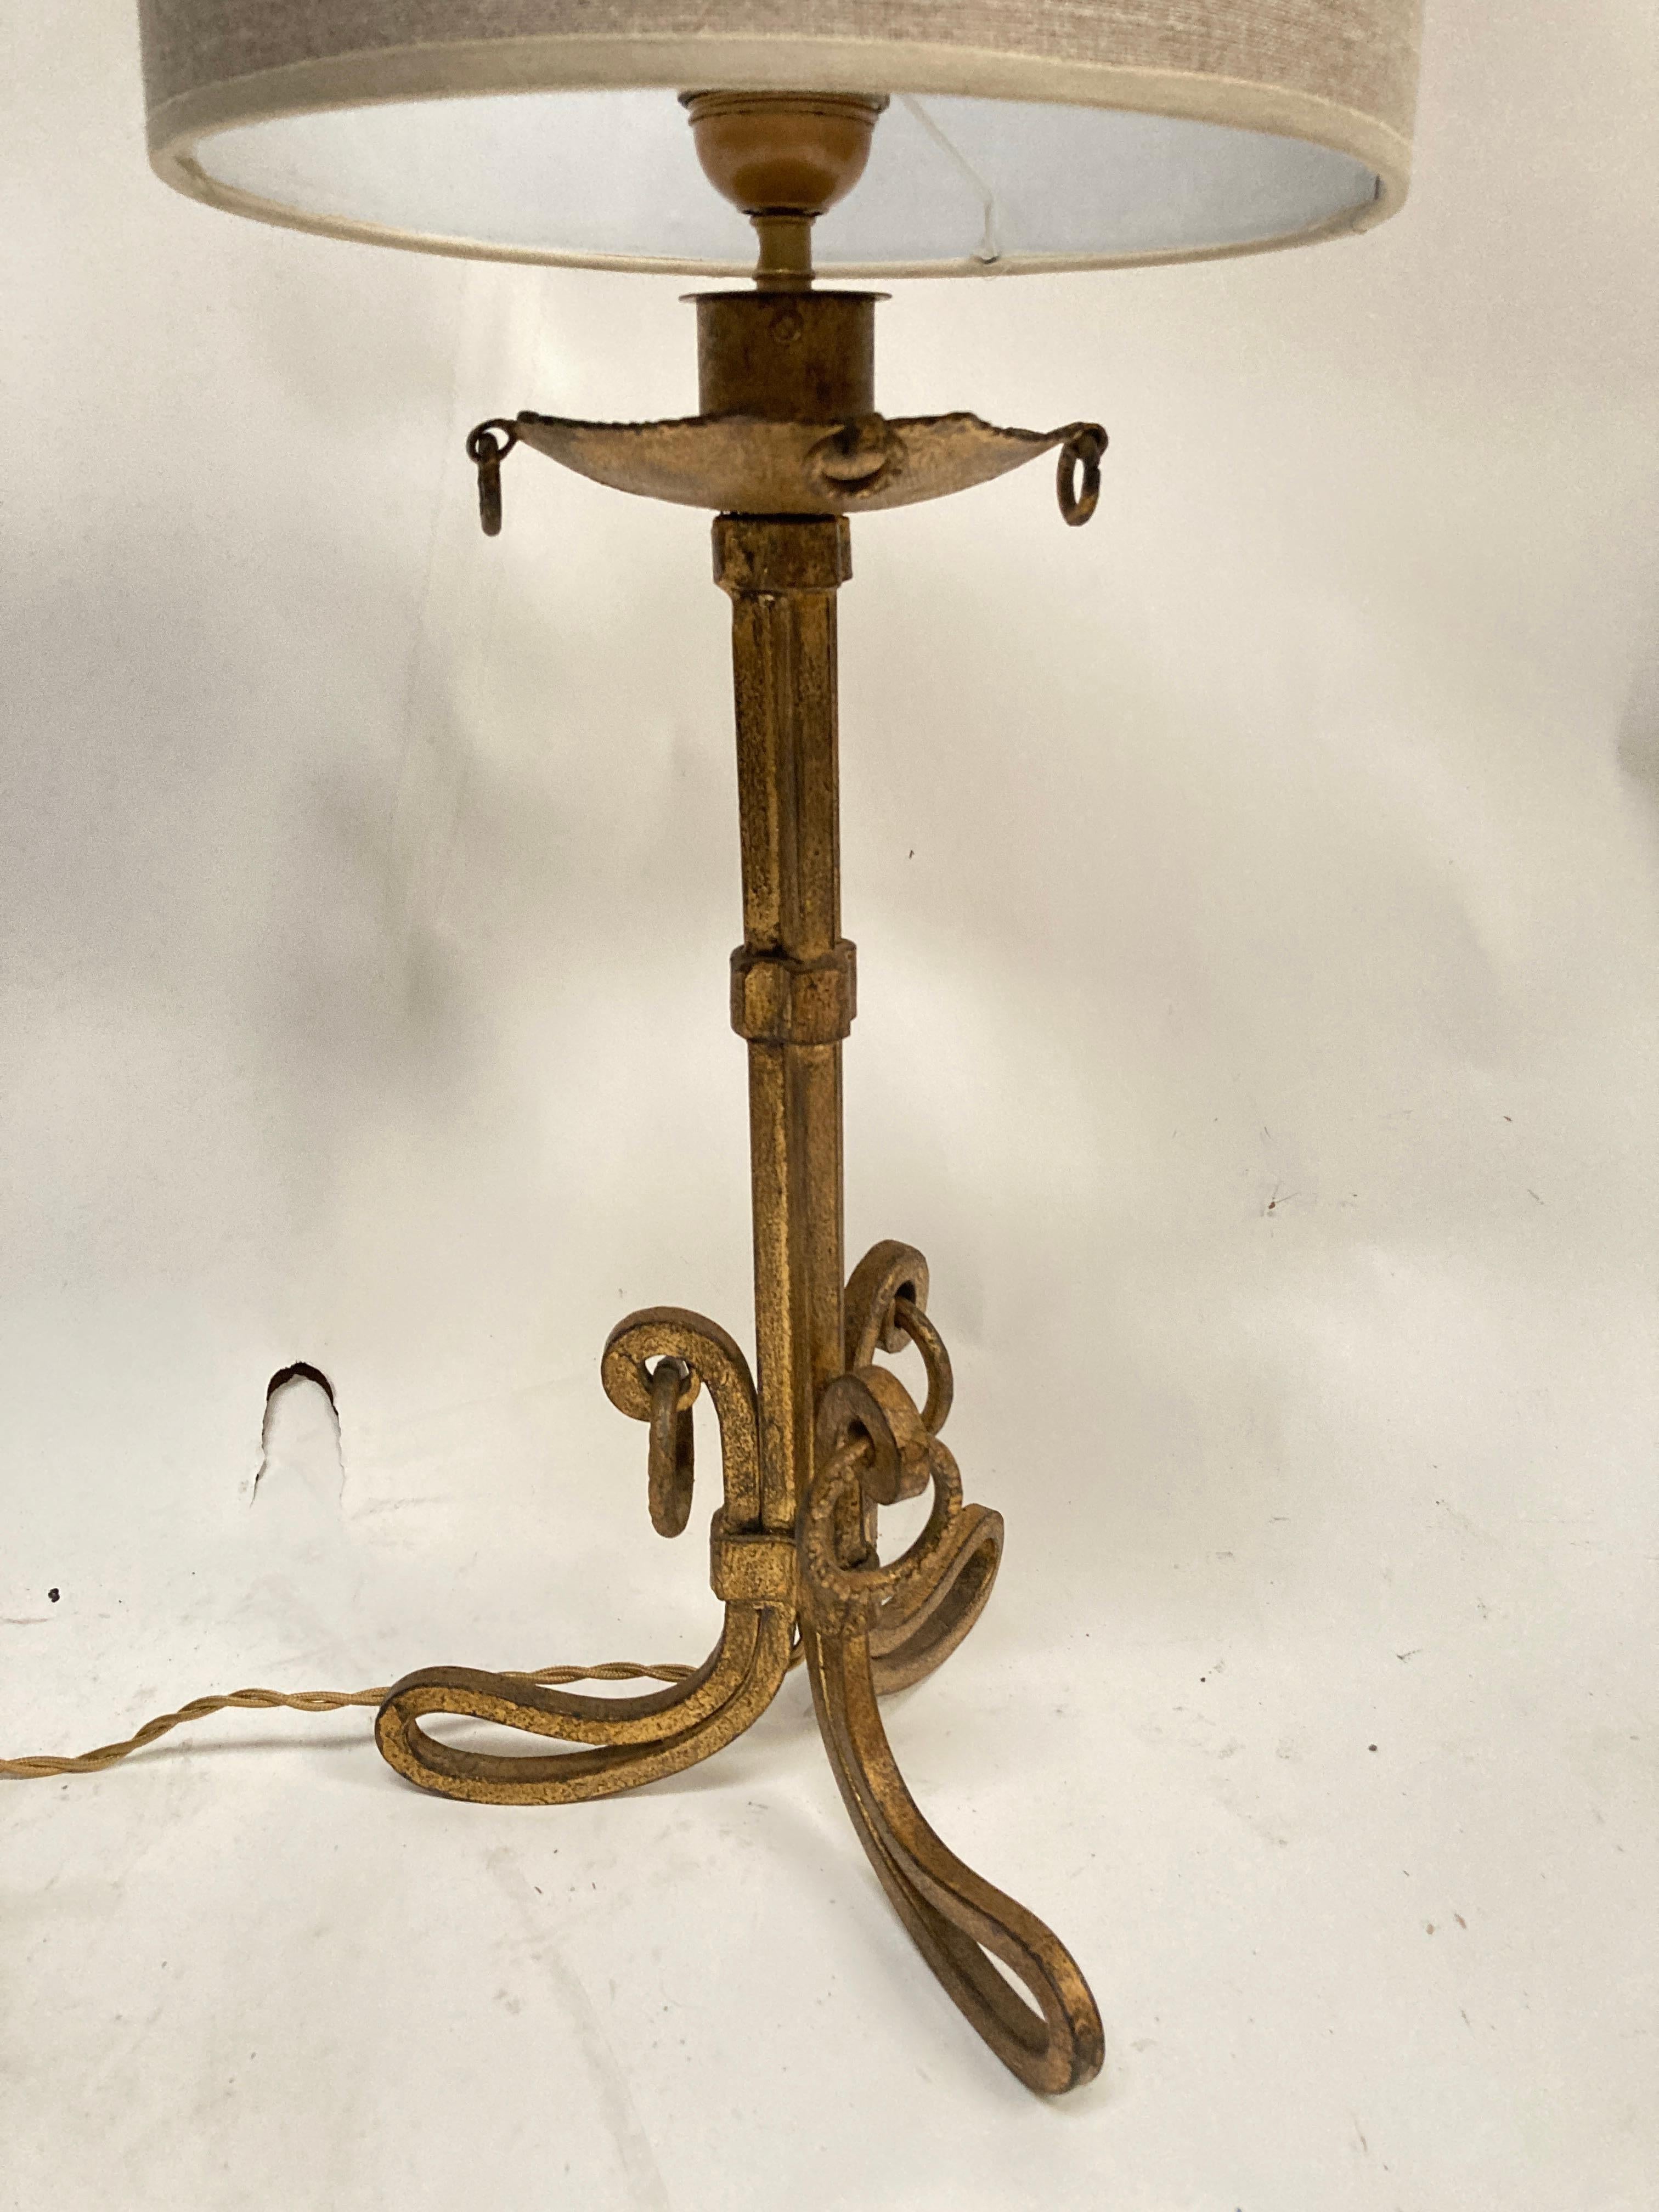 Lampe de table en fer forgé doré des années 1940 par Maison Ramsay
France
Dimensions données sans ombre
Pas d'abat-jour inclus